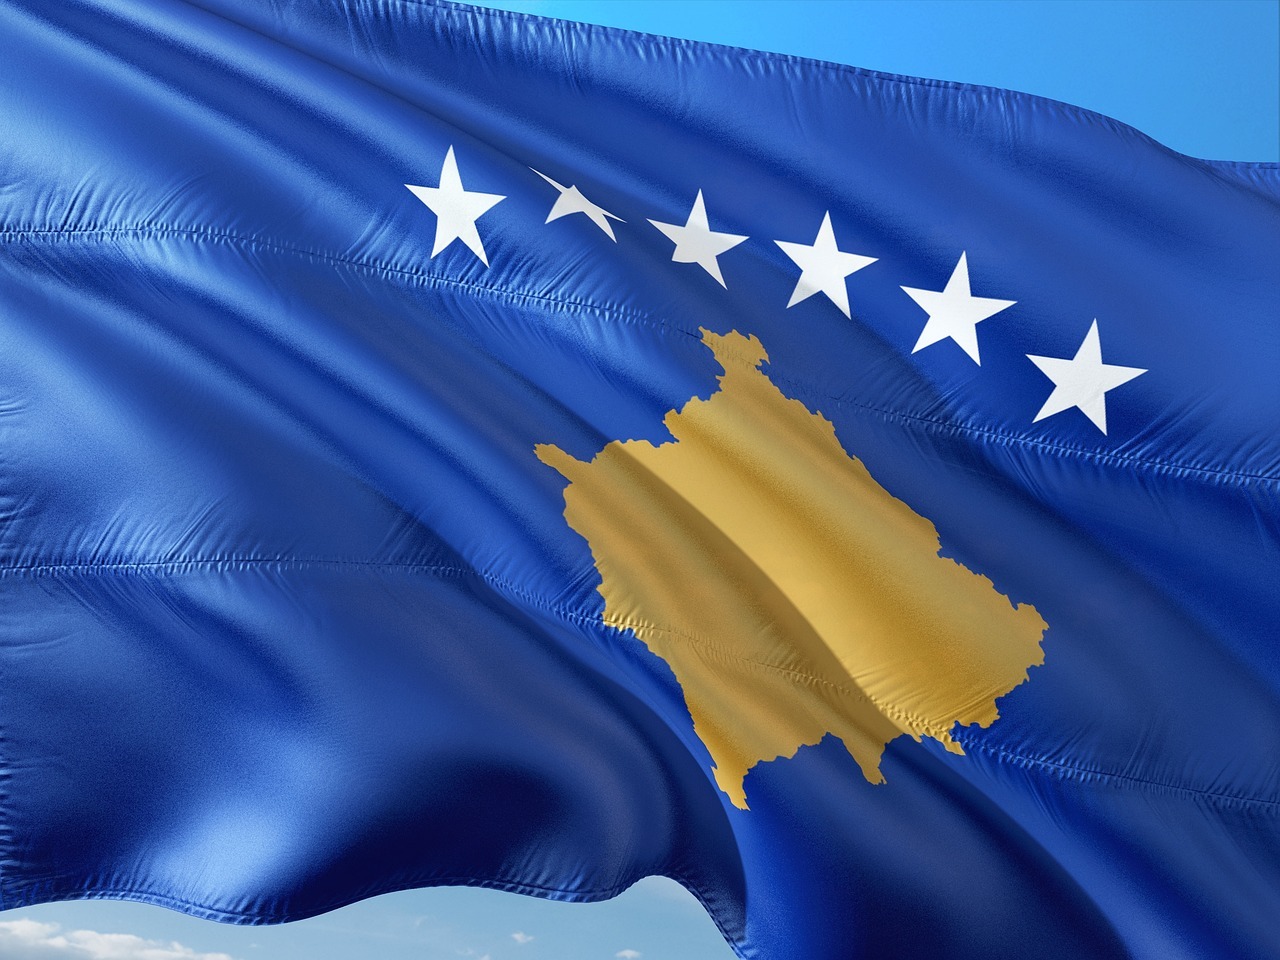 歐盟同意科索沃免簽證待遇後 西班牙跟進承認護照